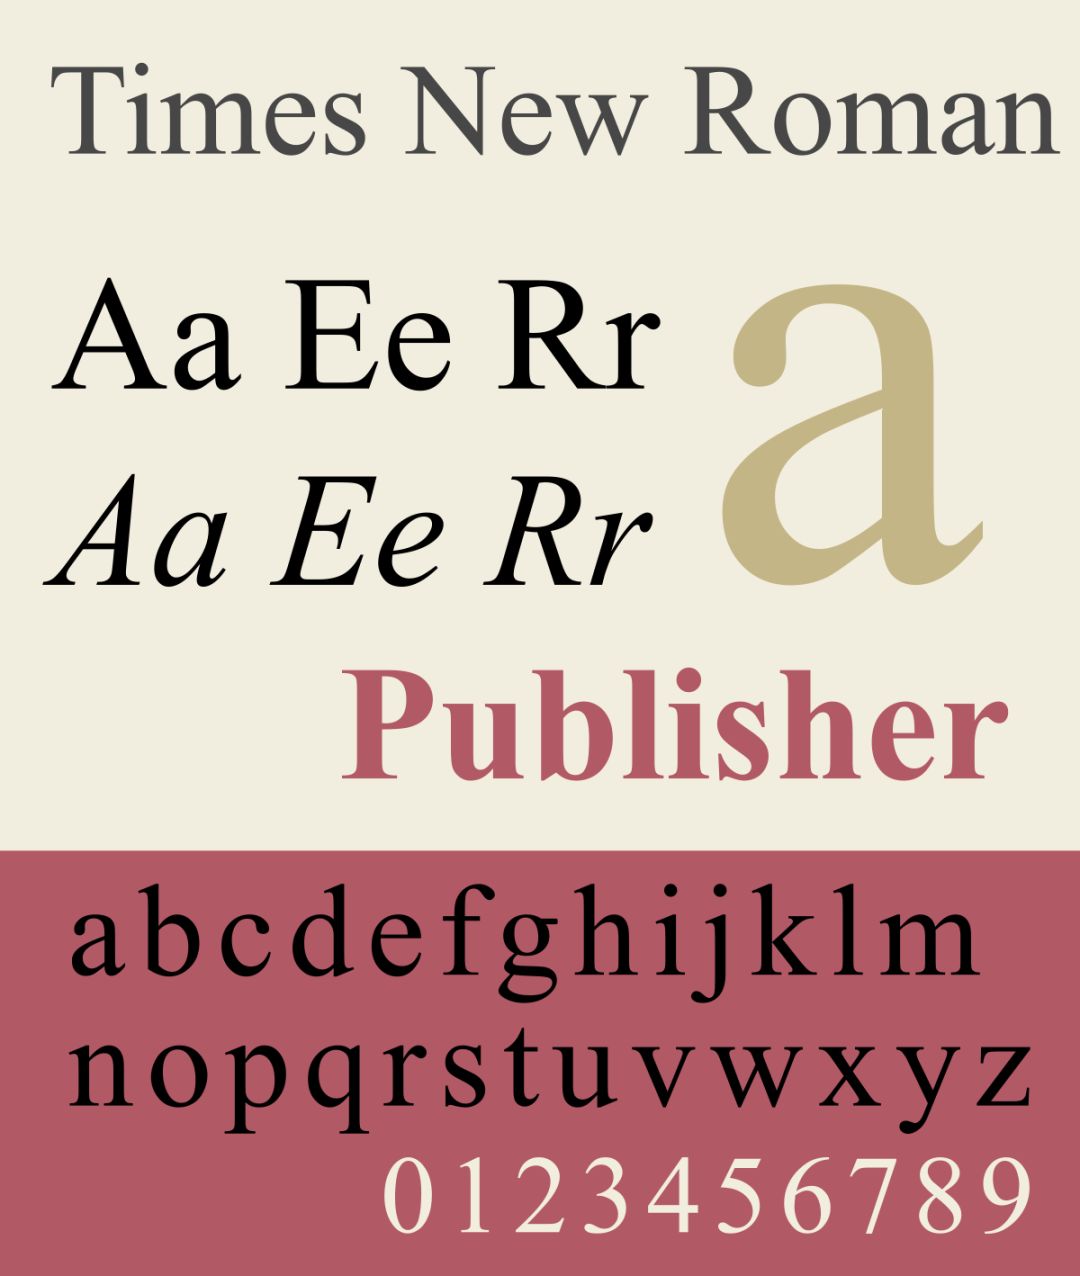 同样, times new roman (新罗马字体)也是很有代表性的字体.